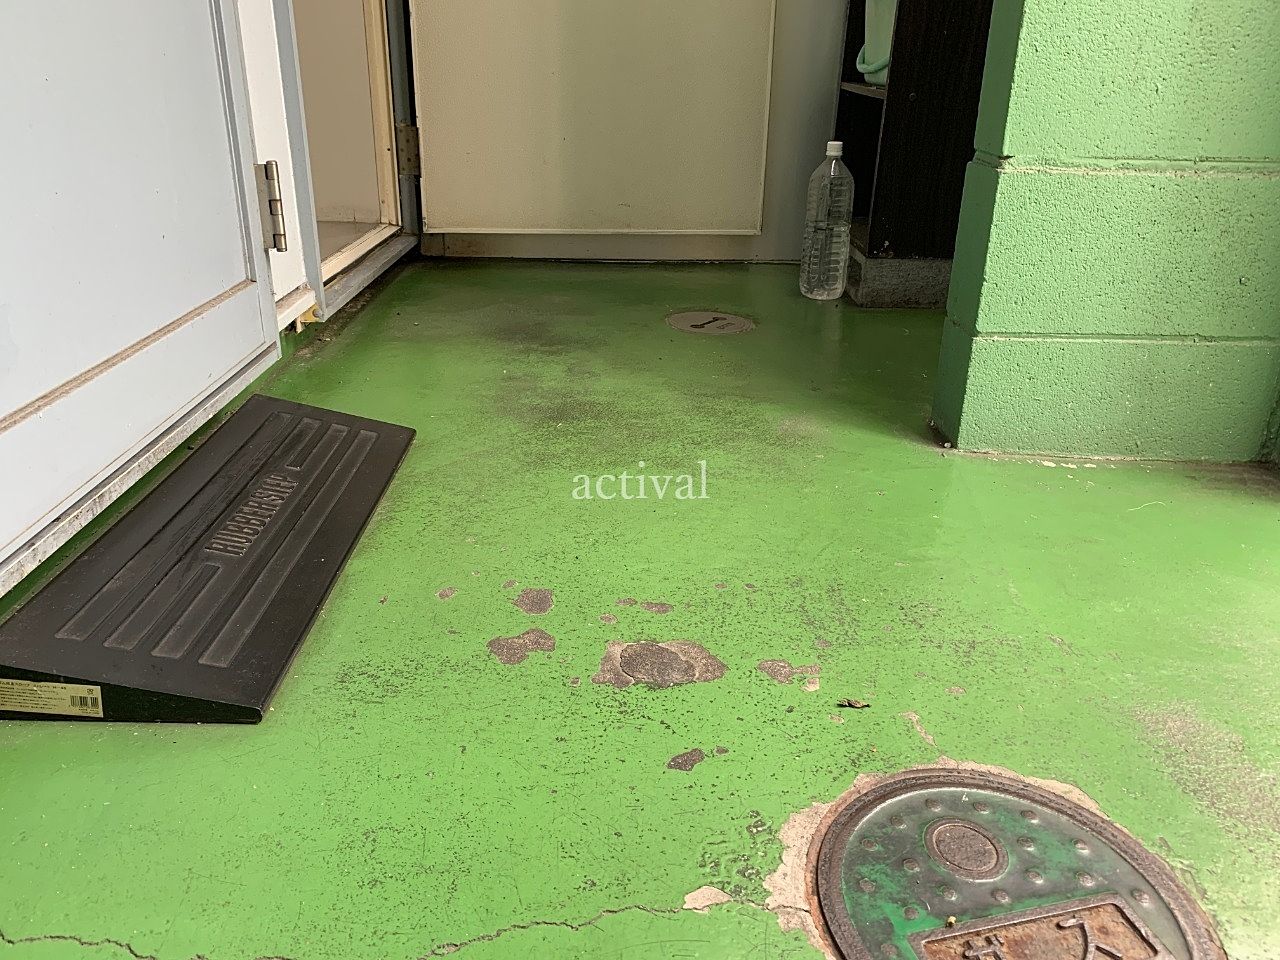 ア・ス・ヴェルデⅢの共用スペースの床の水拭き掃除をしました。